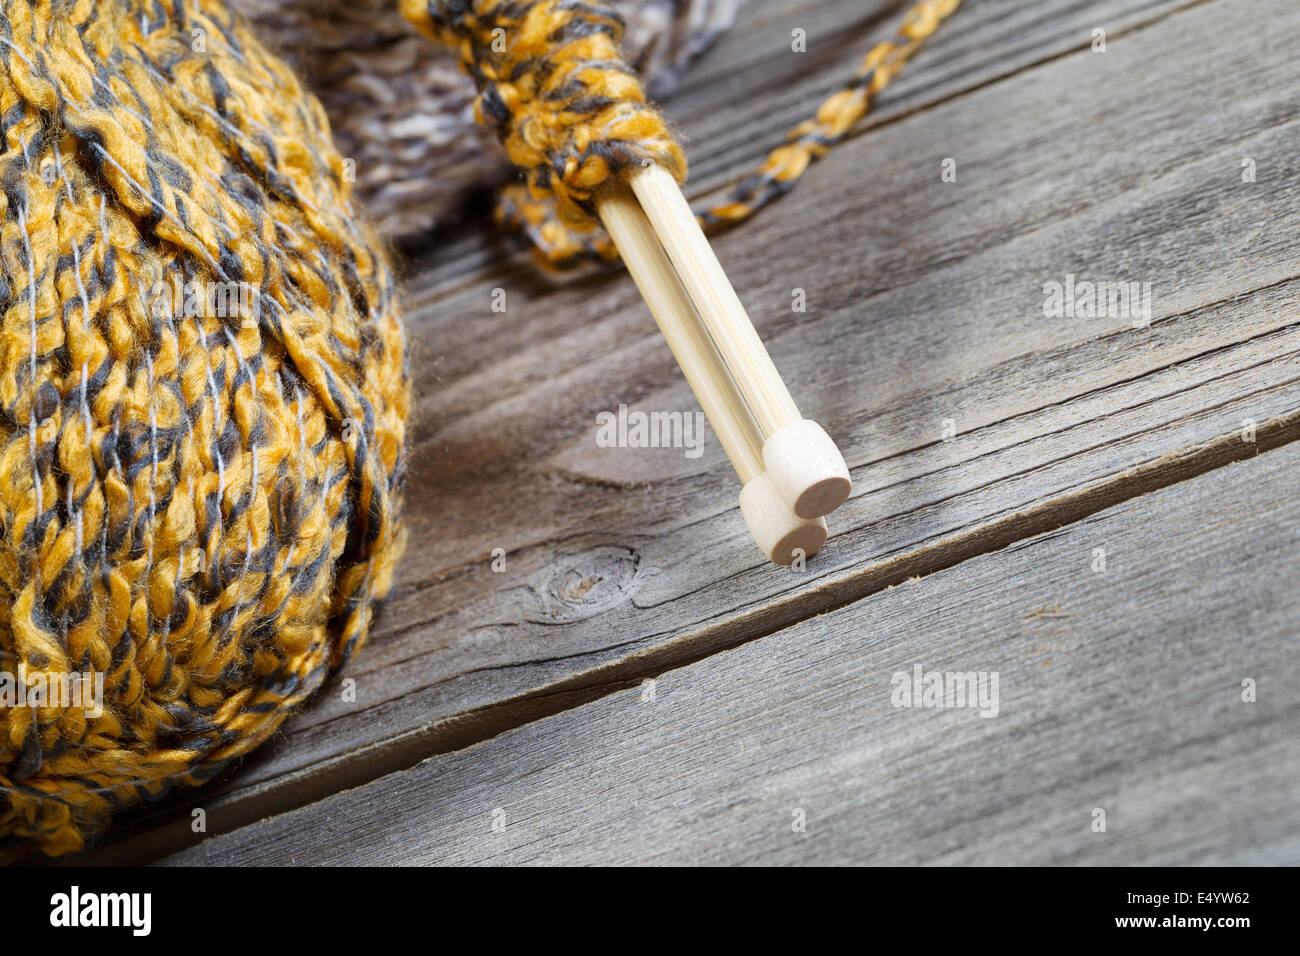 Vue rapprochée de l'angle des aiguilles à tricoter en bois, l'accent sur la partie inférieure, avec des boules de laine en arrière-plan sur bois rustique Banque D'Images